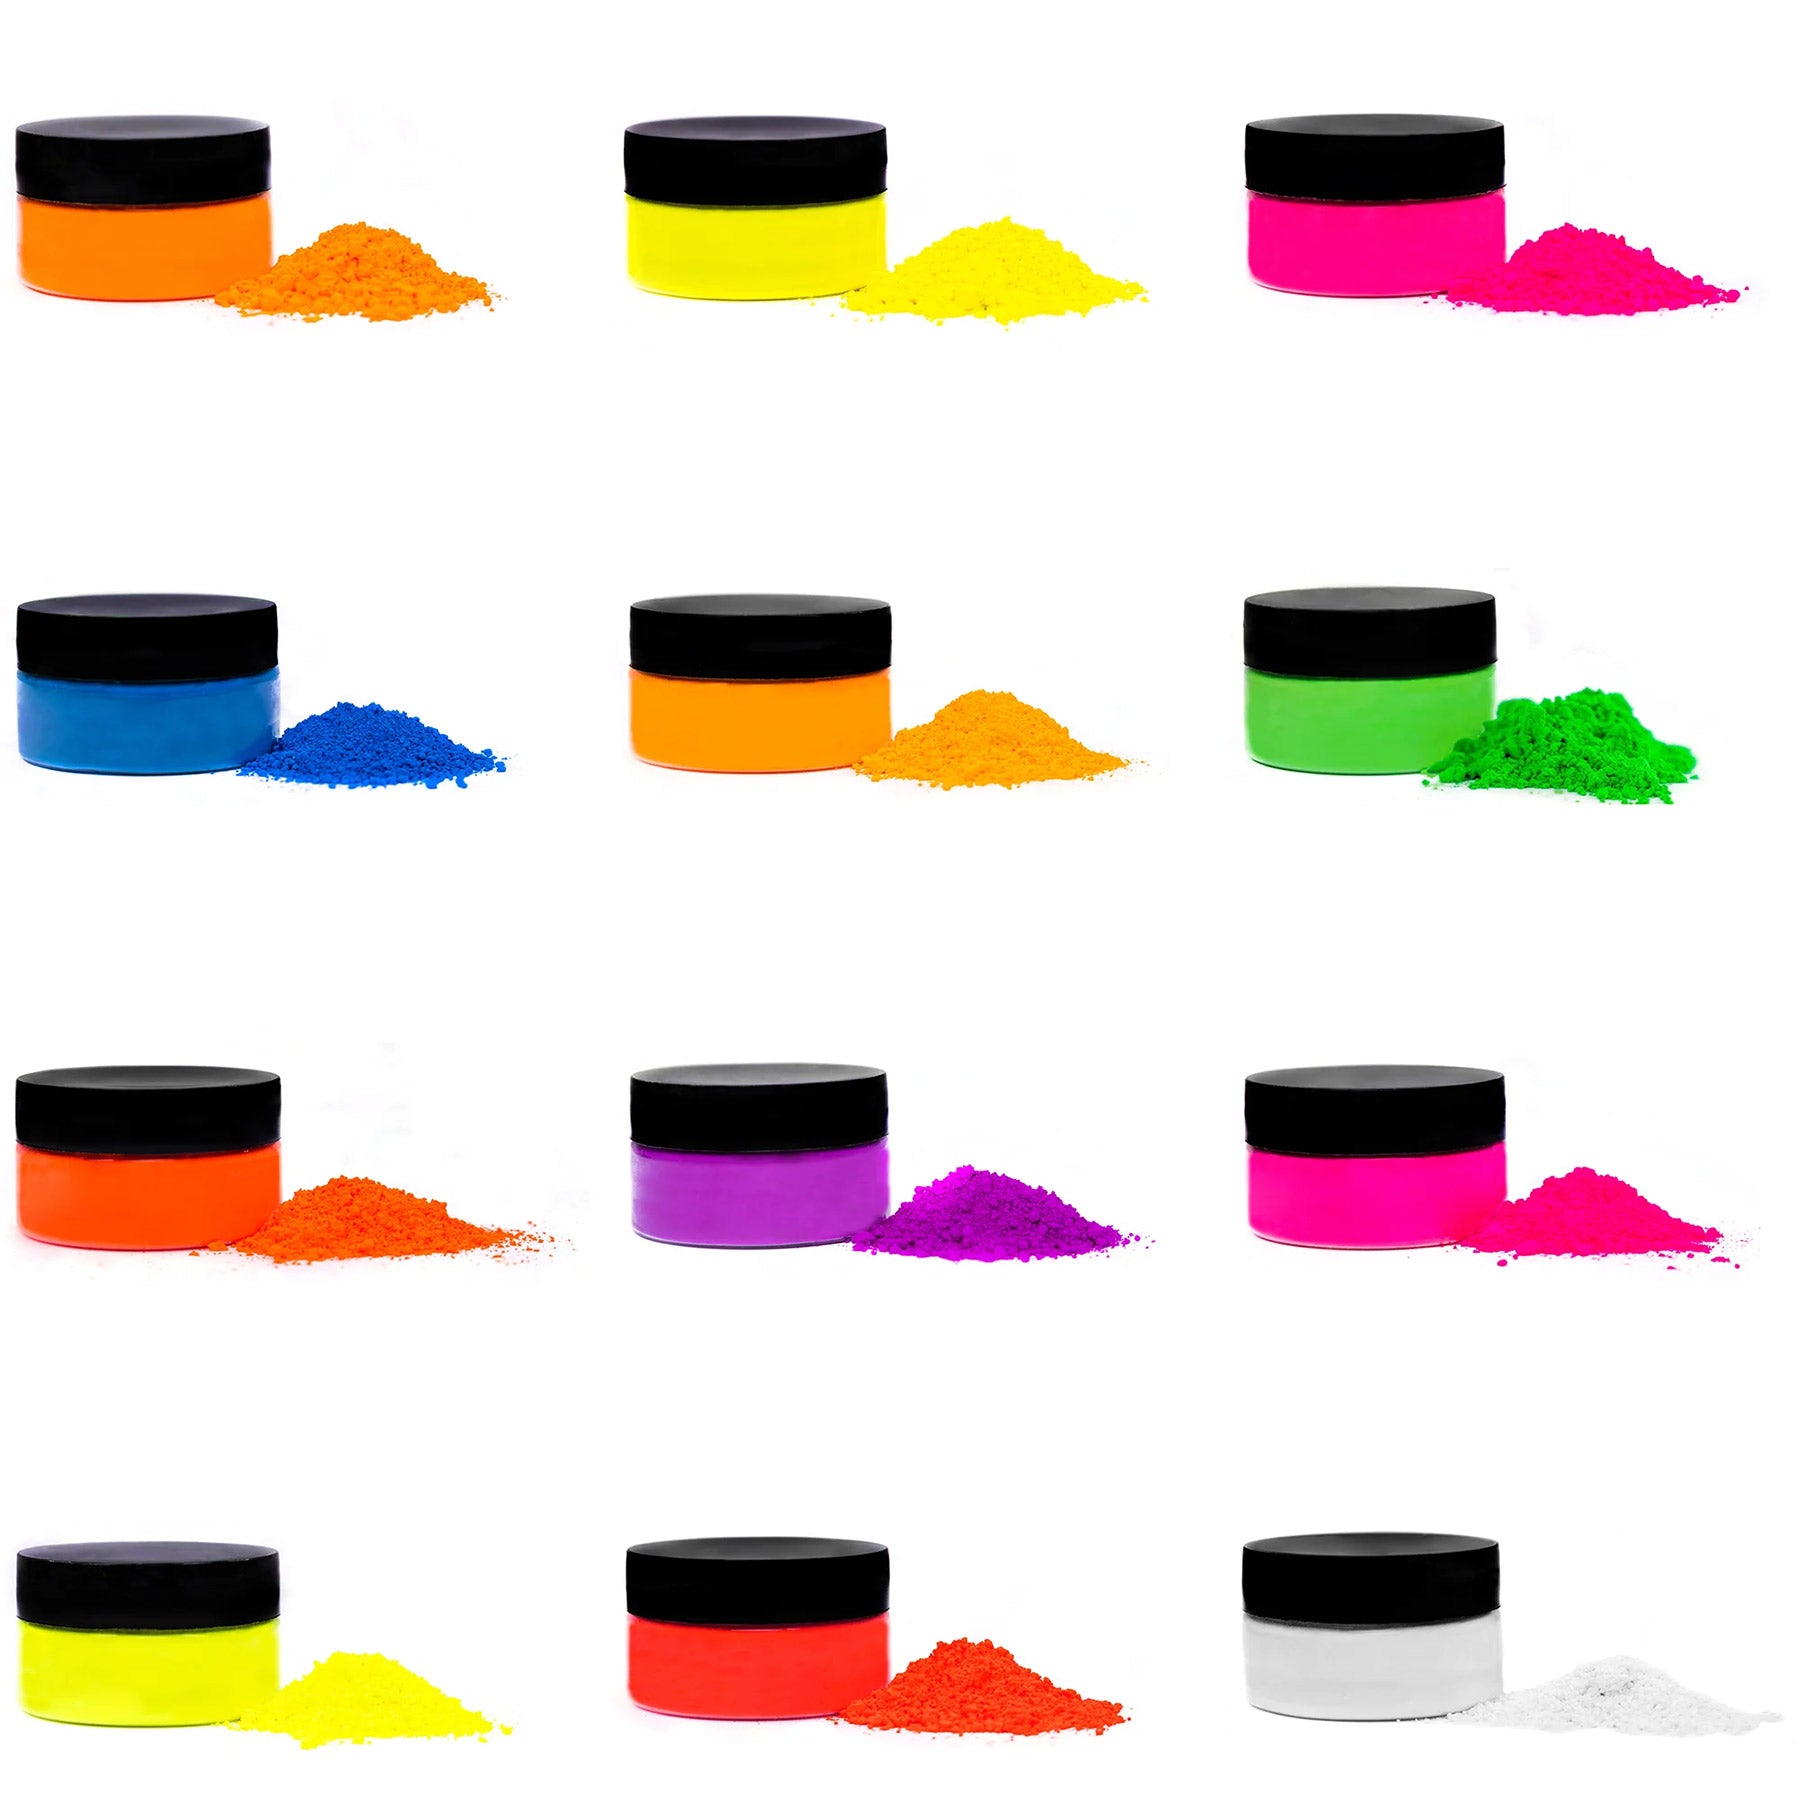 rolio-neon-flourescent-pigment-powder_a1dc3374-e2e8-4264-9533-0af2d20cd62a.jpg